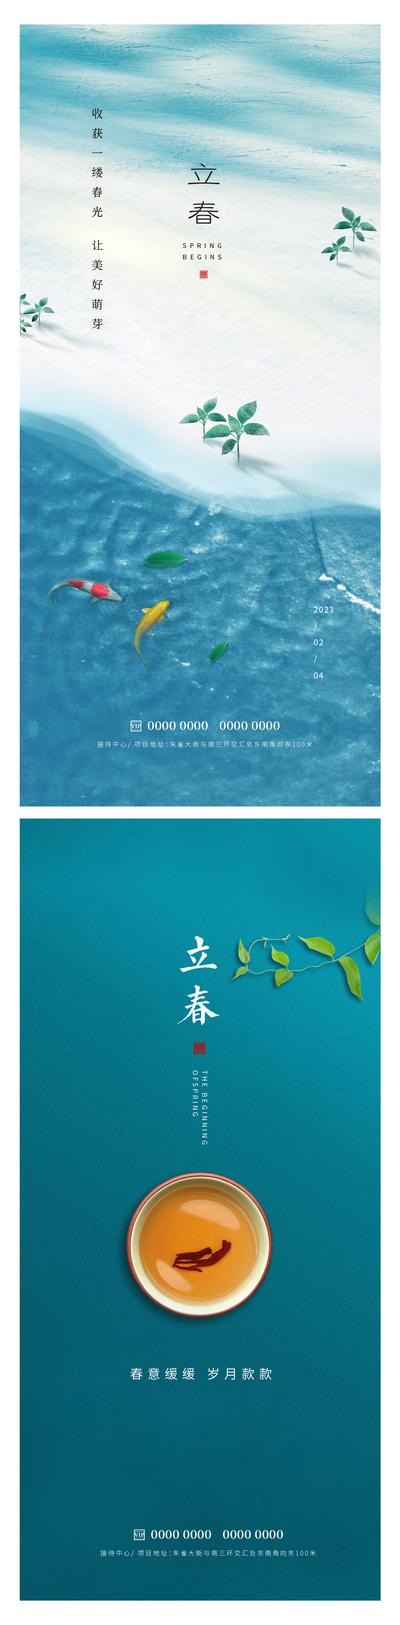 南门网 广告 节日 春天 立春 海水 鱼